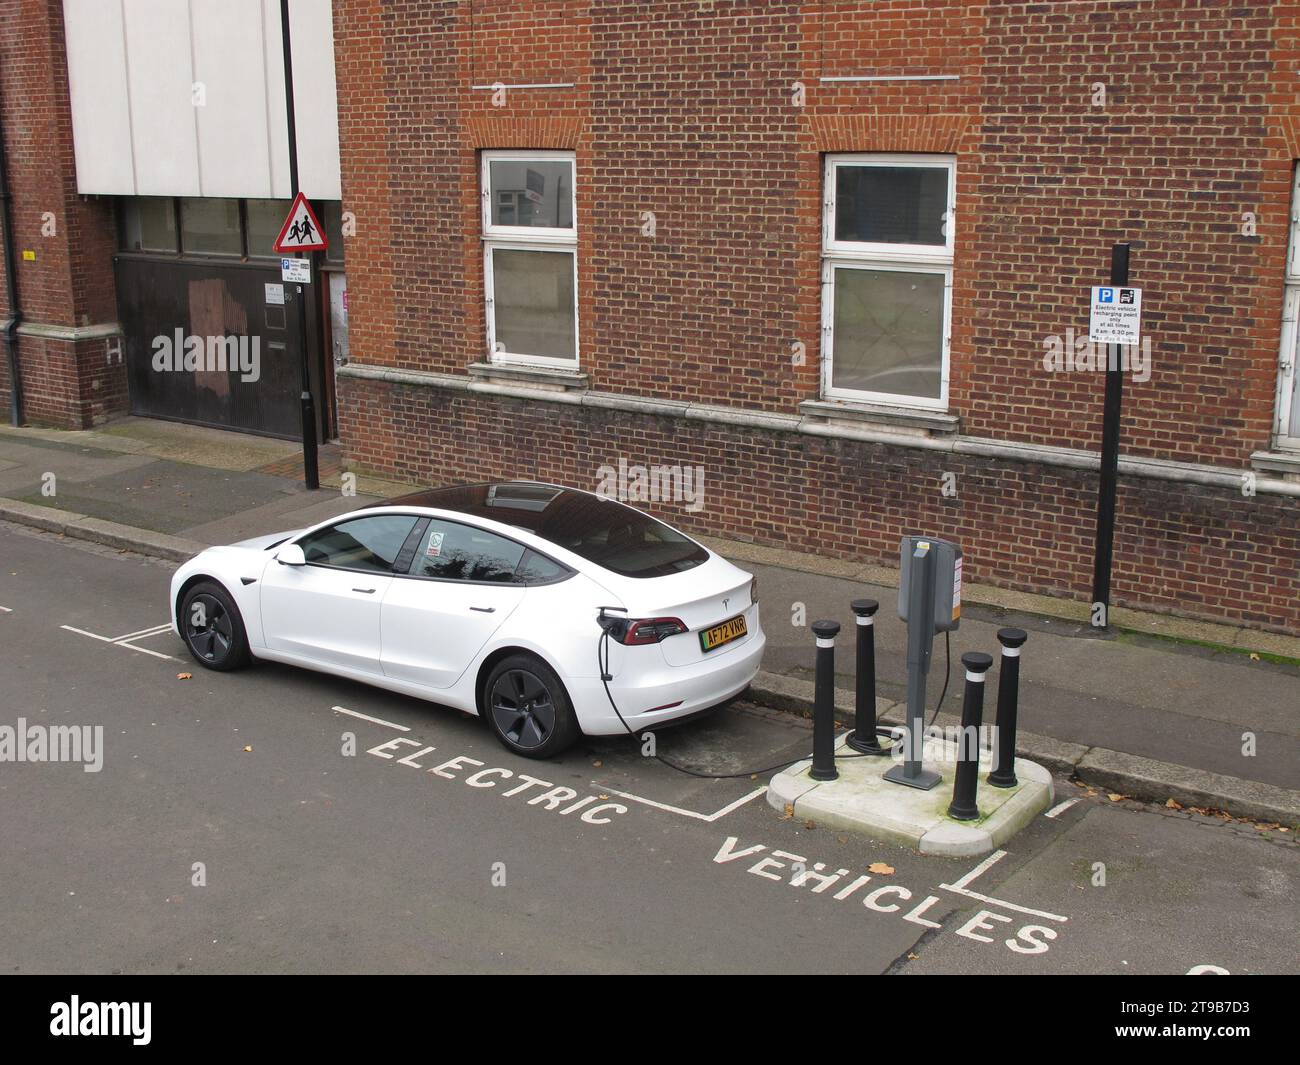 Sui punti di ricarica per veicoli stradali a Leyton, Londra, Regno Unito. Un'auto Tesla collegata a un punto di ricarica per veicoli elettrici gestito da un comune. Foto Stock